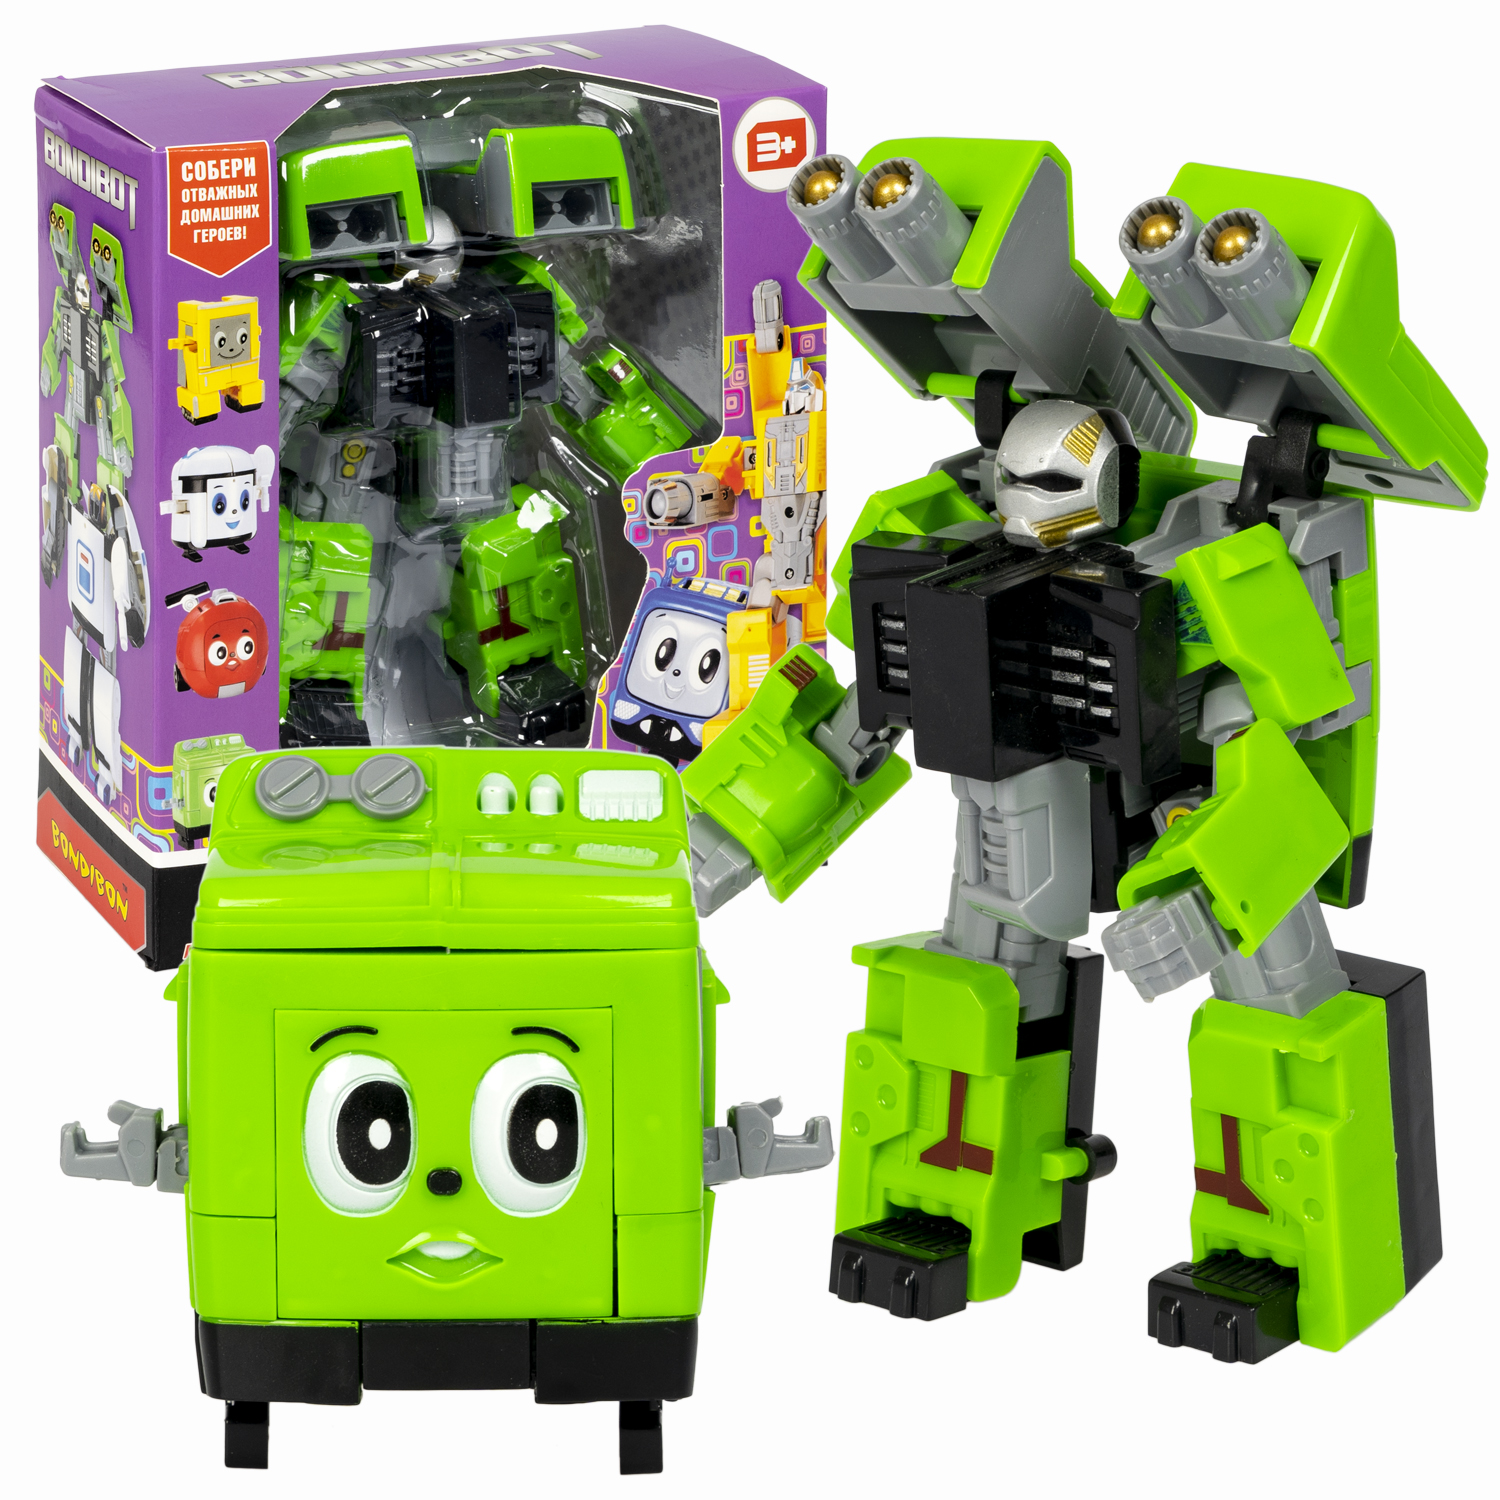 Трансформер 2в1 BONDIBOT Bondibon робот-стиральная машинка, цвет зелёный / ВВ5829 игрушка трансформер тобот 5 серии робот машинка 2 в 1